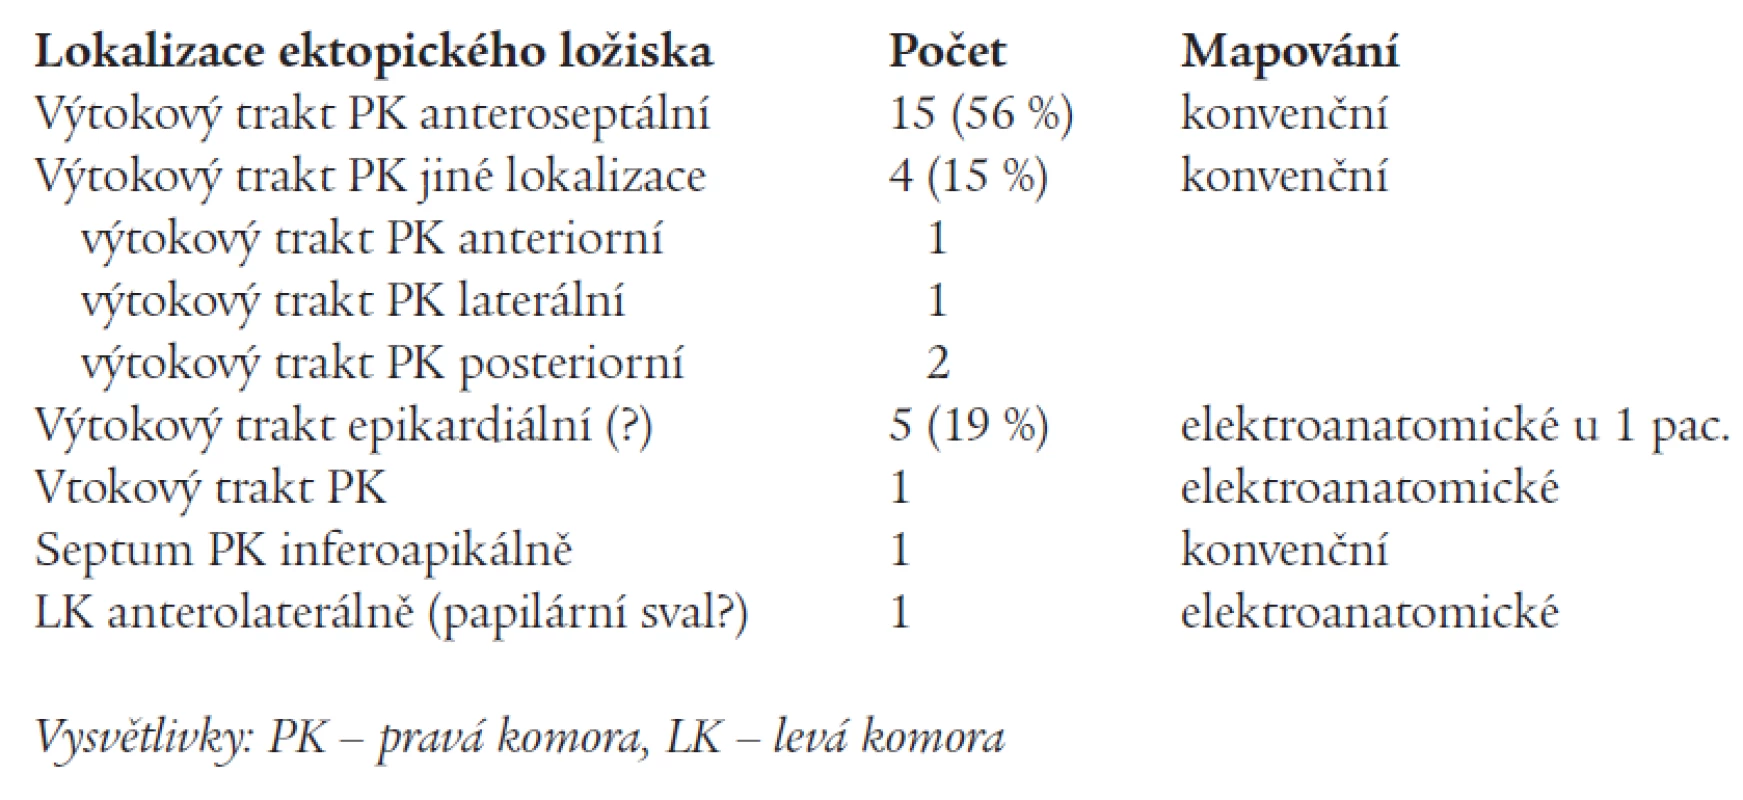 Lokalizace ektopických ložisek podle mapování.